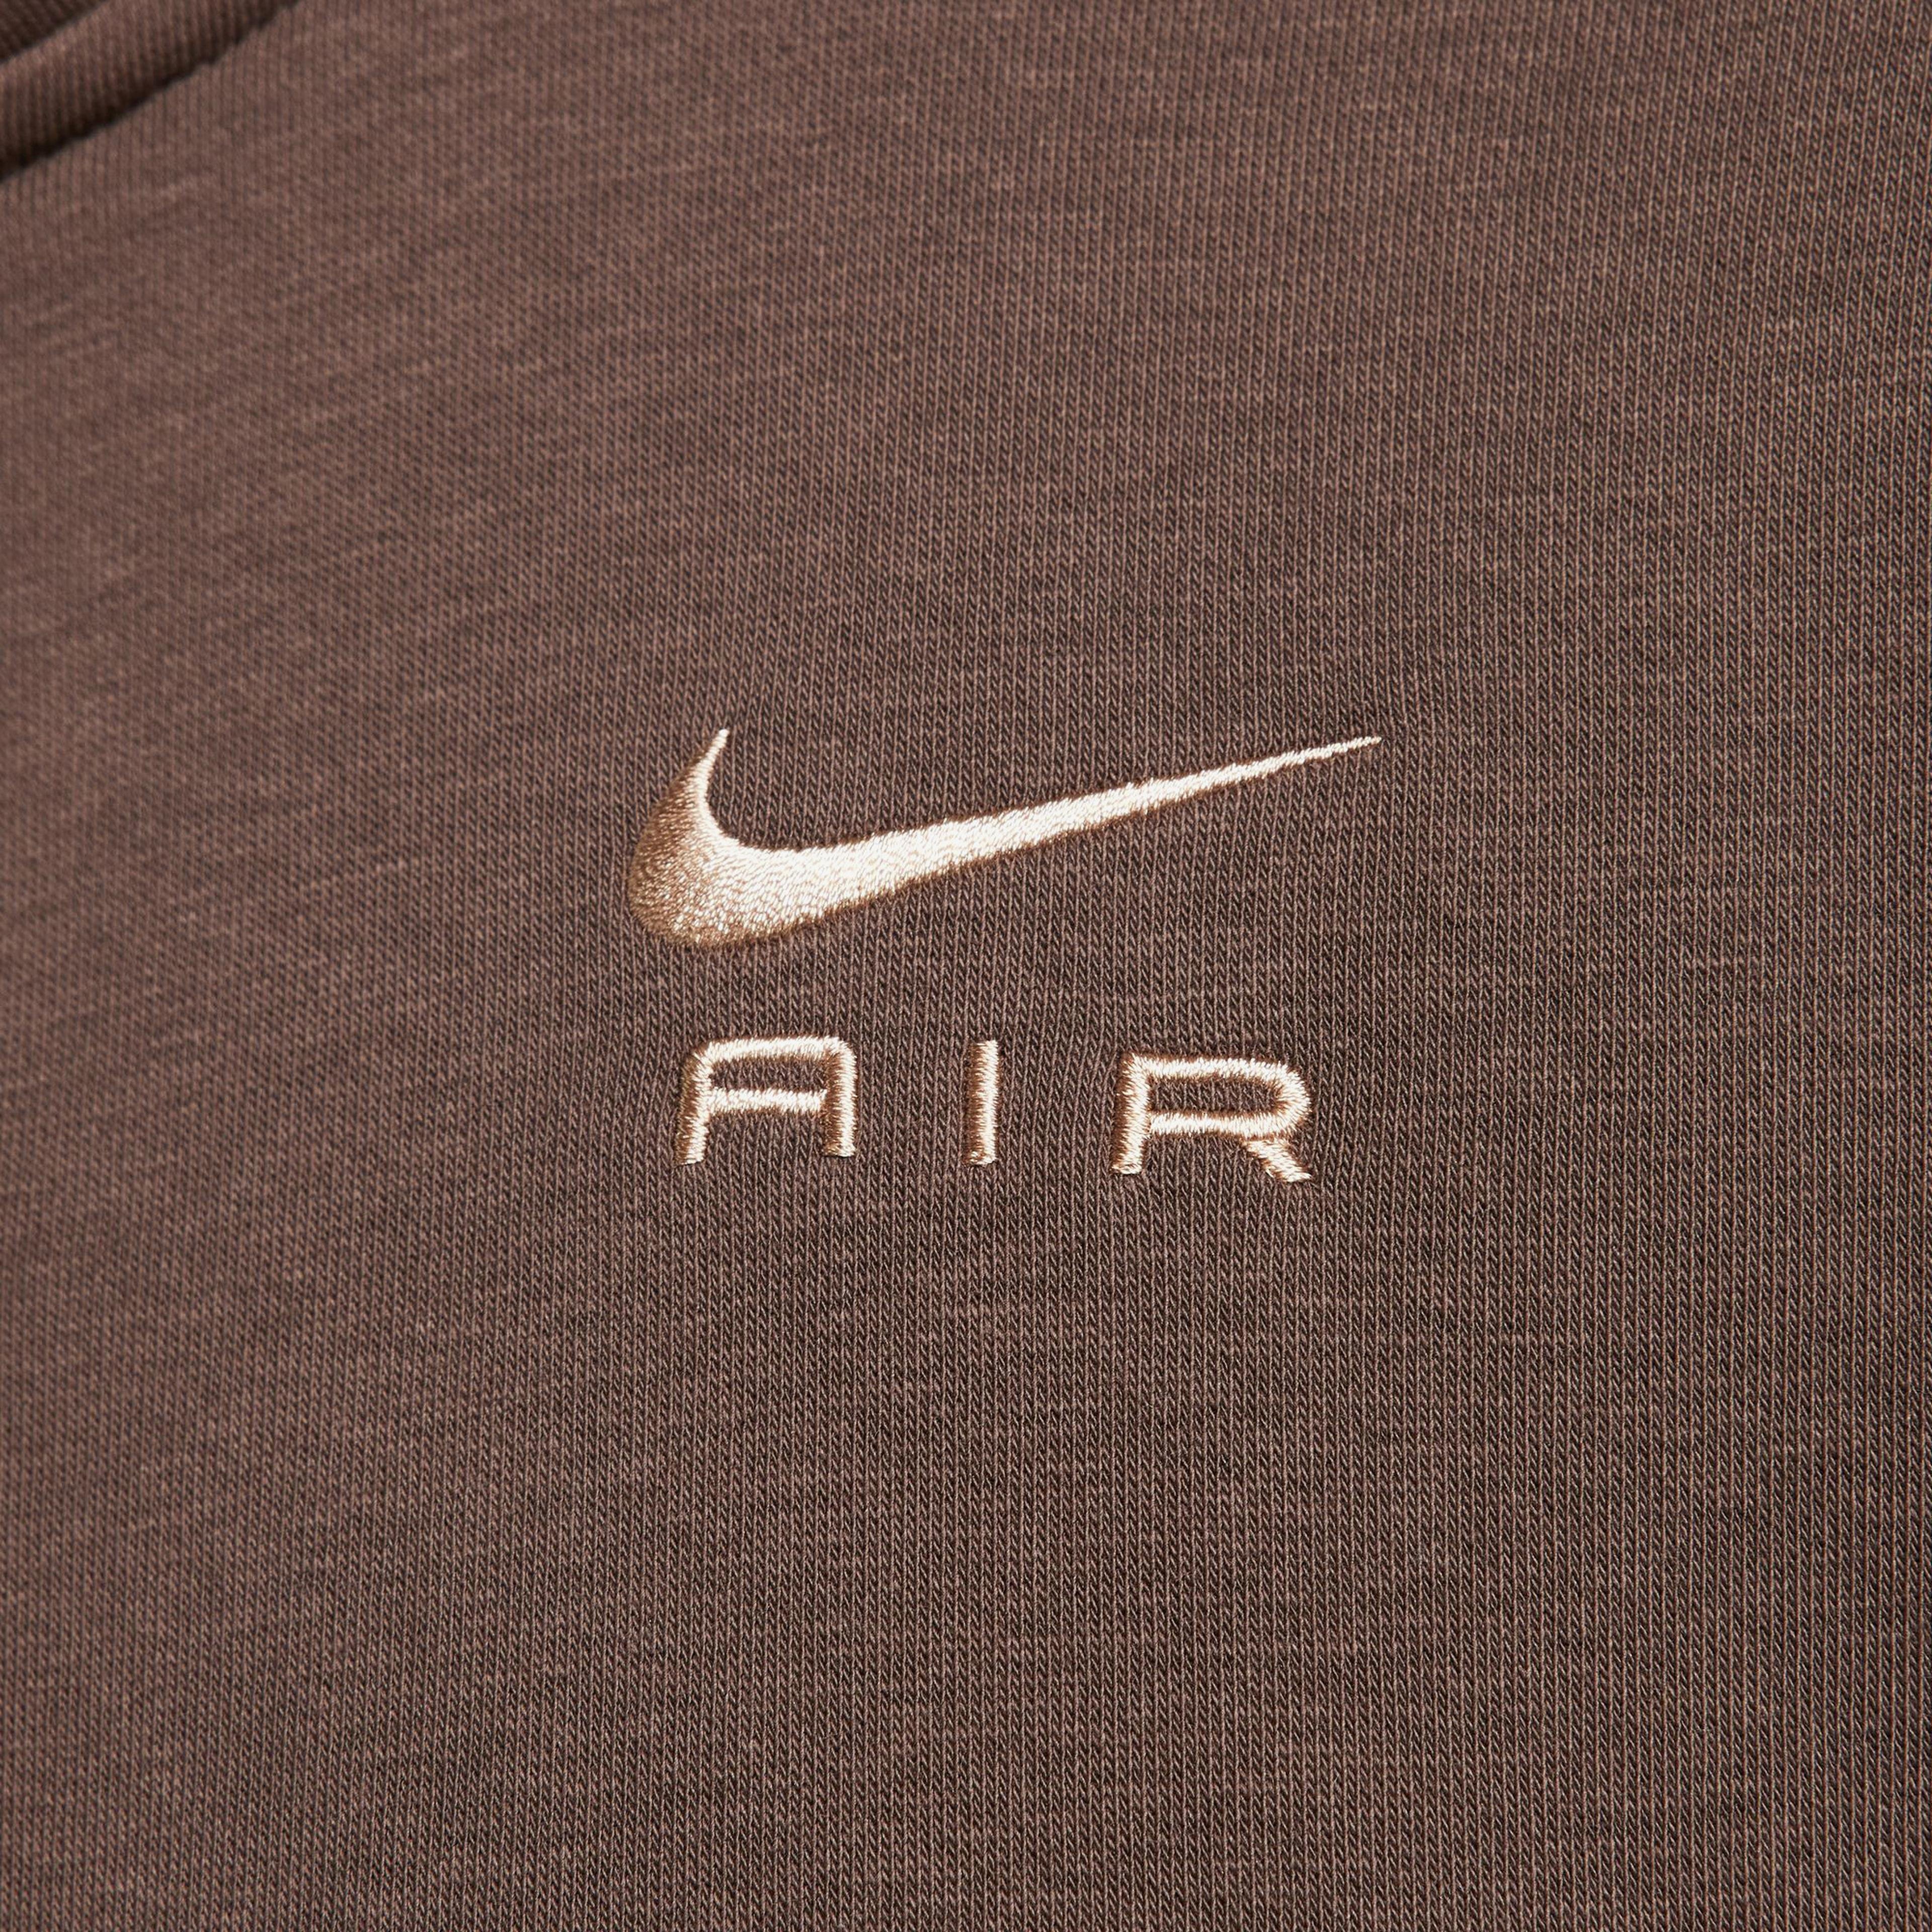 Nike Sportswear Air Fleece Top Kadın Kahverengi Sweatshirt